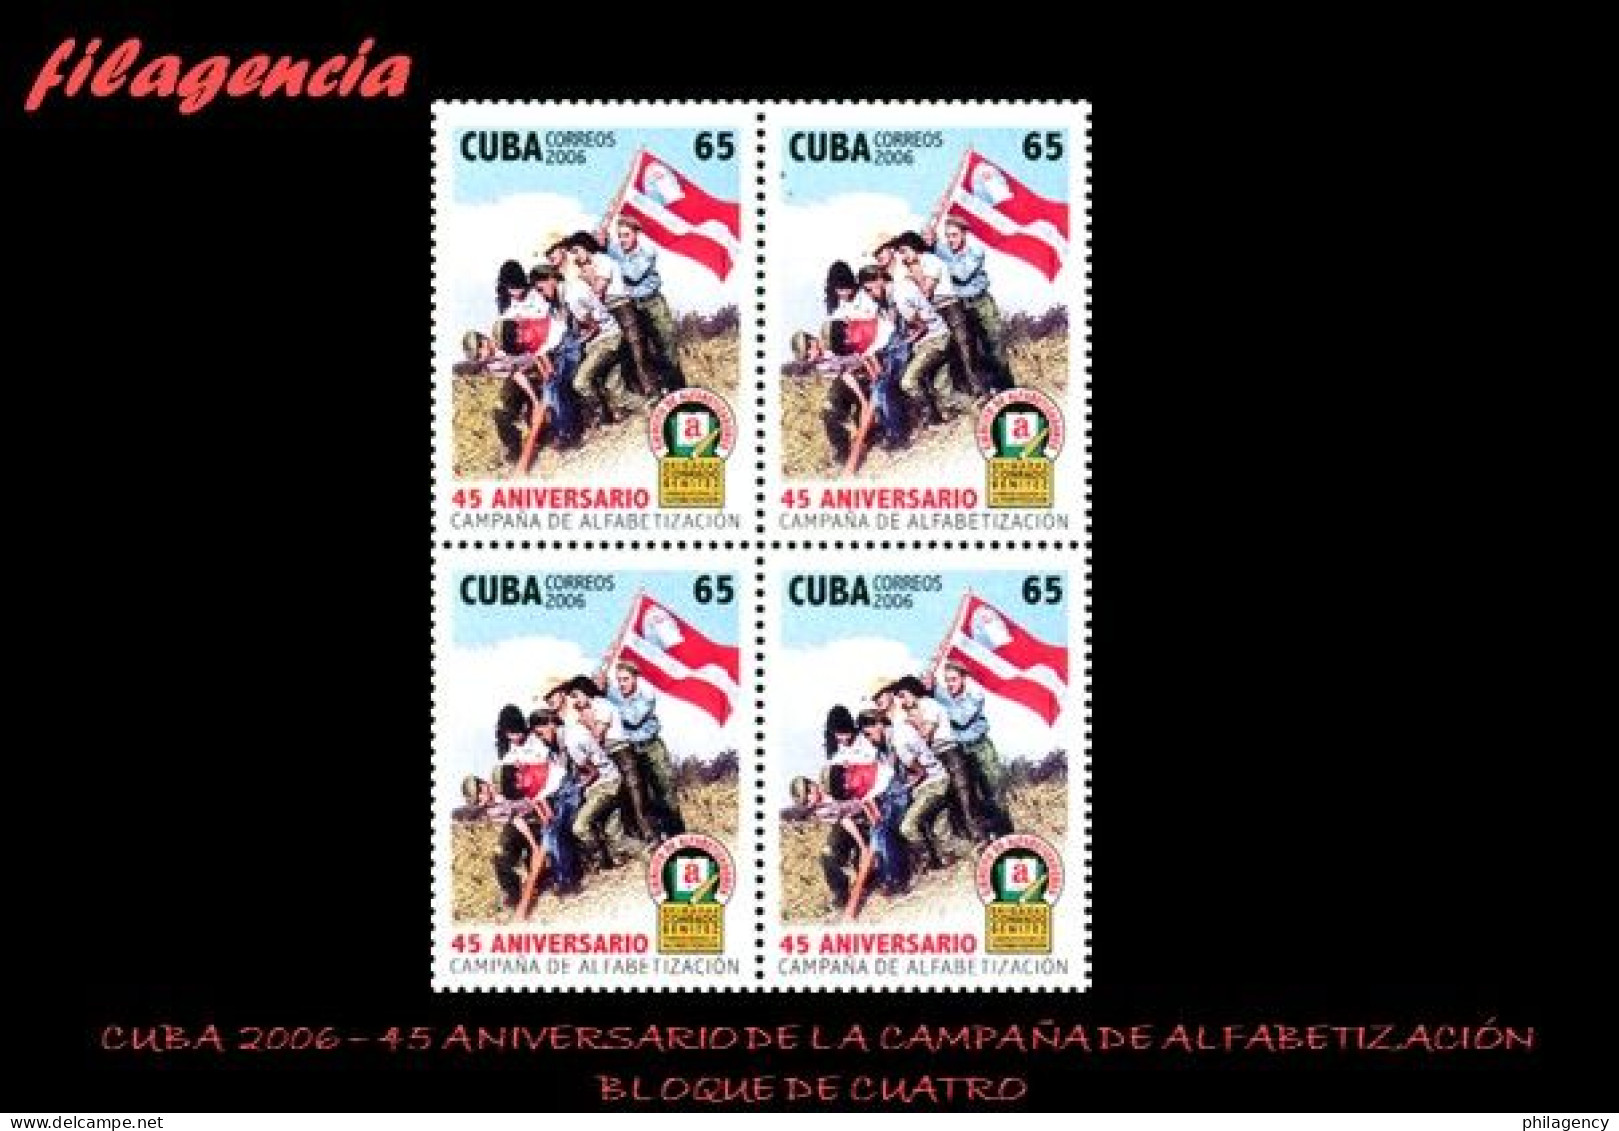 CUBA. BLOQUES DE CUATRO. 2006-37 45 ANIVERSARIO DE LA CAMPAÑA DE ALFABETIZACIÓN - Neufs